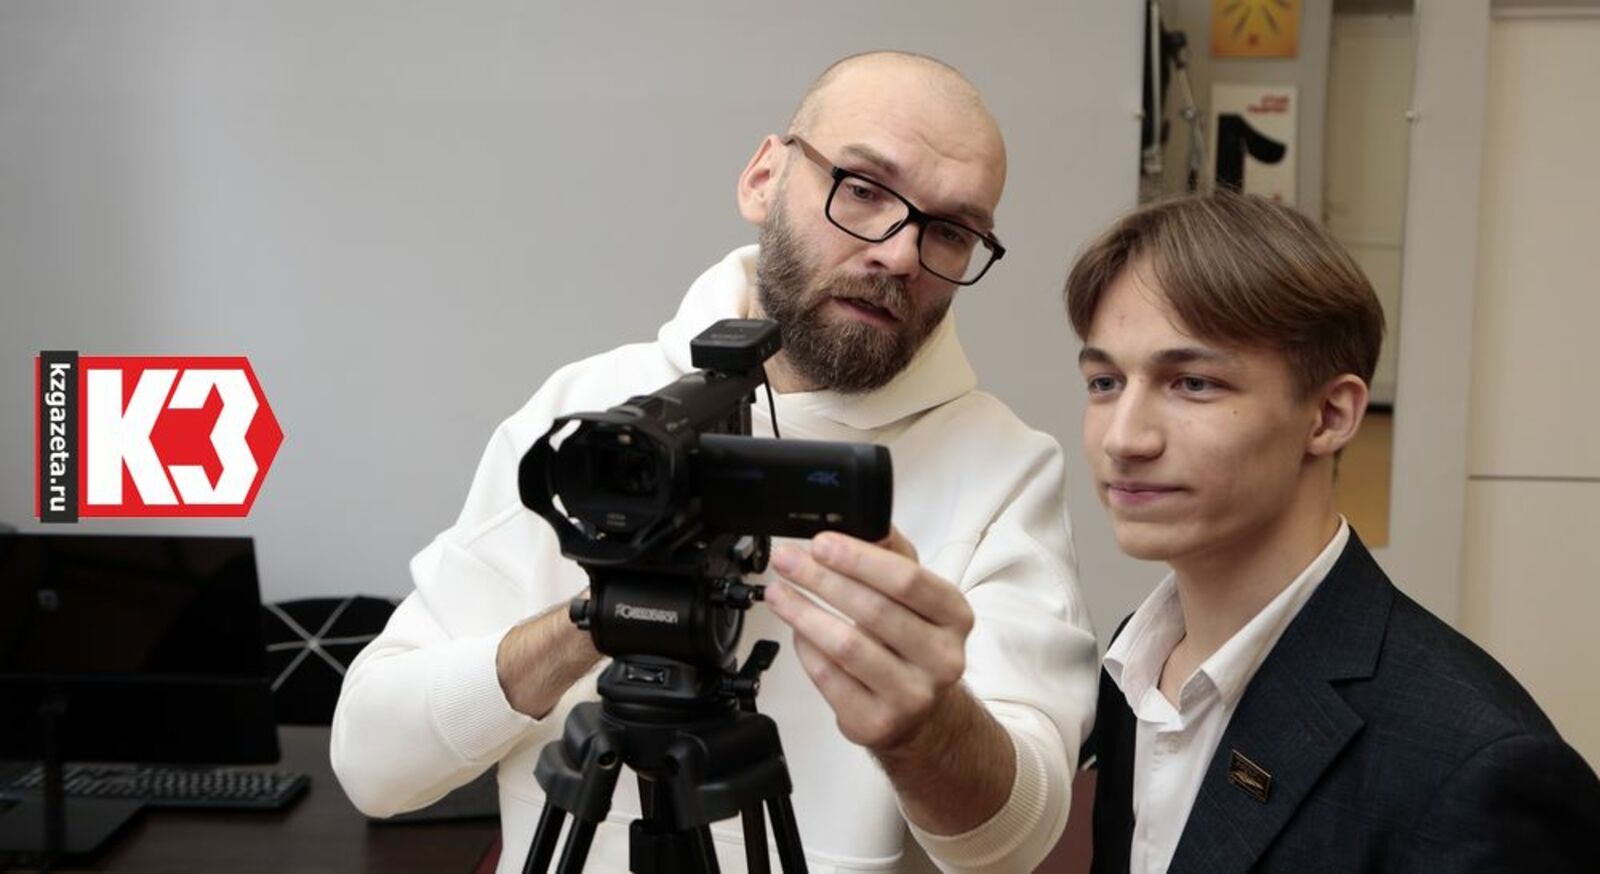 Лицеистов обучают «Основам видеосъёмки». Фото: Руслан Никонов, «КЗ».